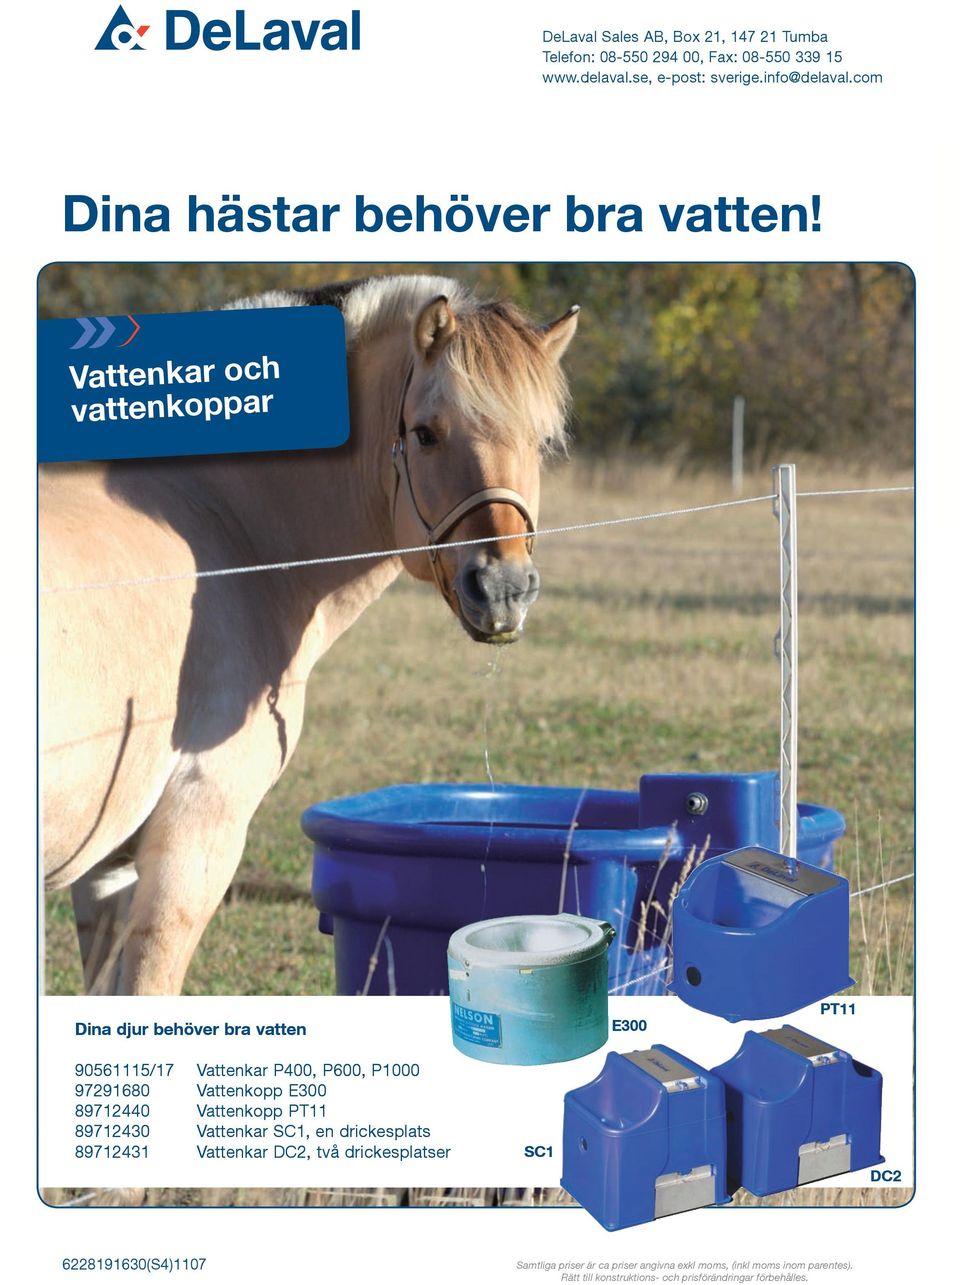 Vattenkar och vattenkoppar Dina djur behöver bra vatten E300 PT11 90561115/17 Vattenkar P400, P600, P1000